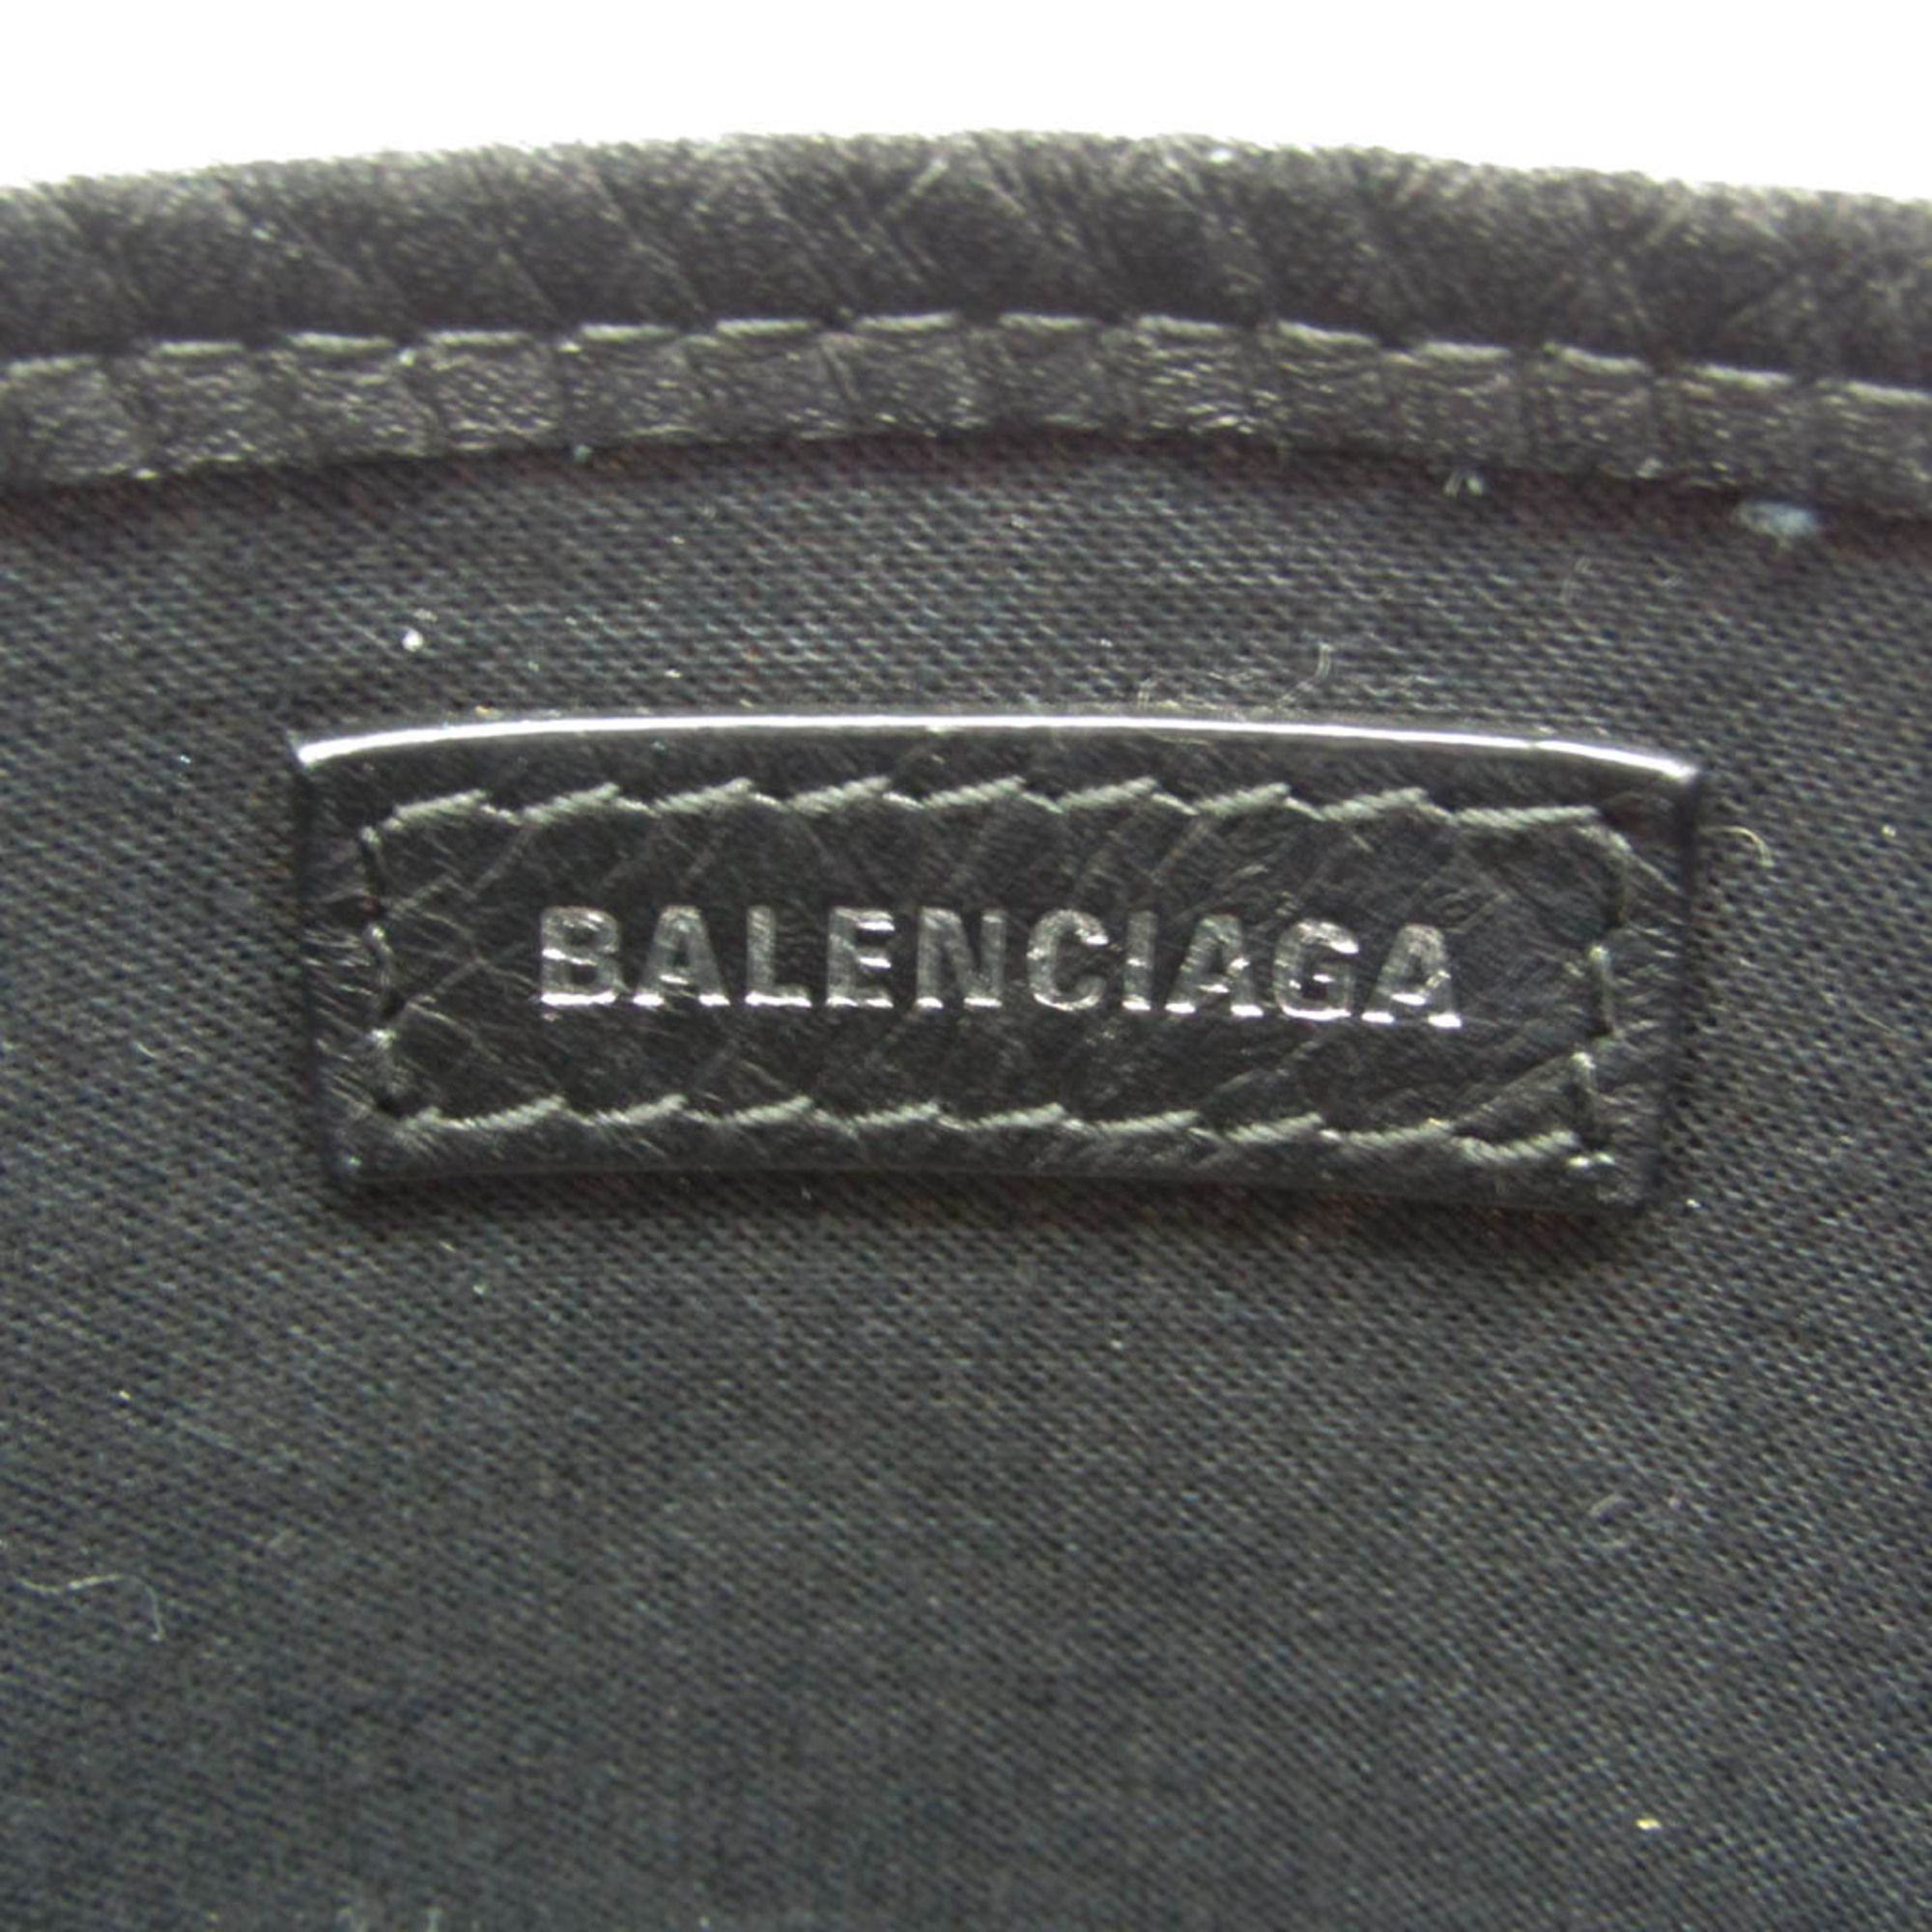 バレンシアガ(Balenciaga) Navy Cabas XS 390346 レディース キャンバス,レザー ハンドバッグ,ショルダーバッグ ブラック,オフホワイト